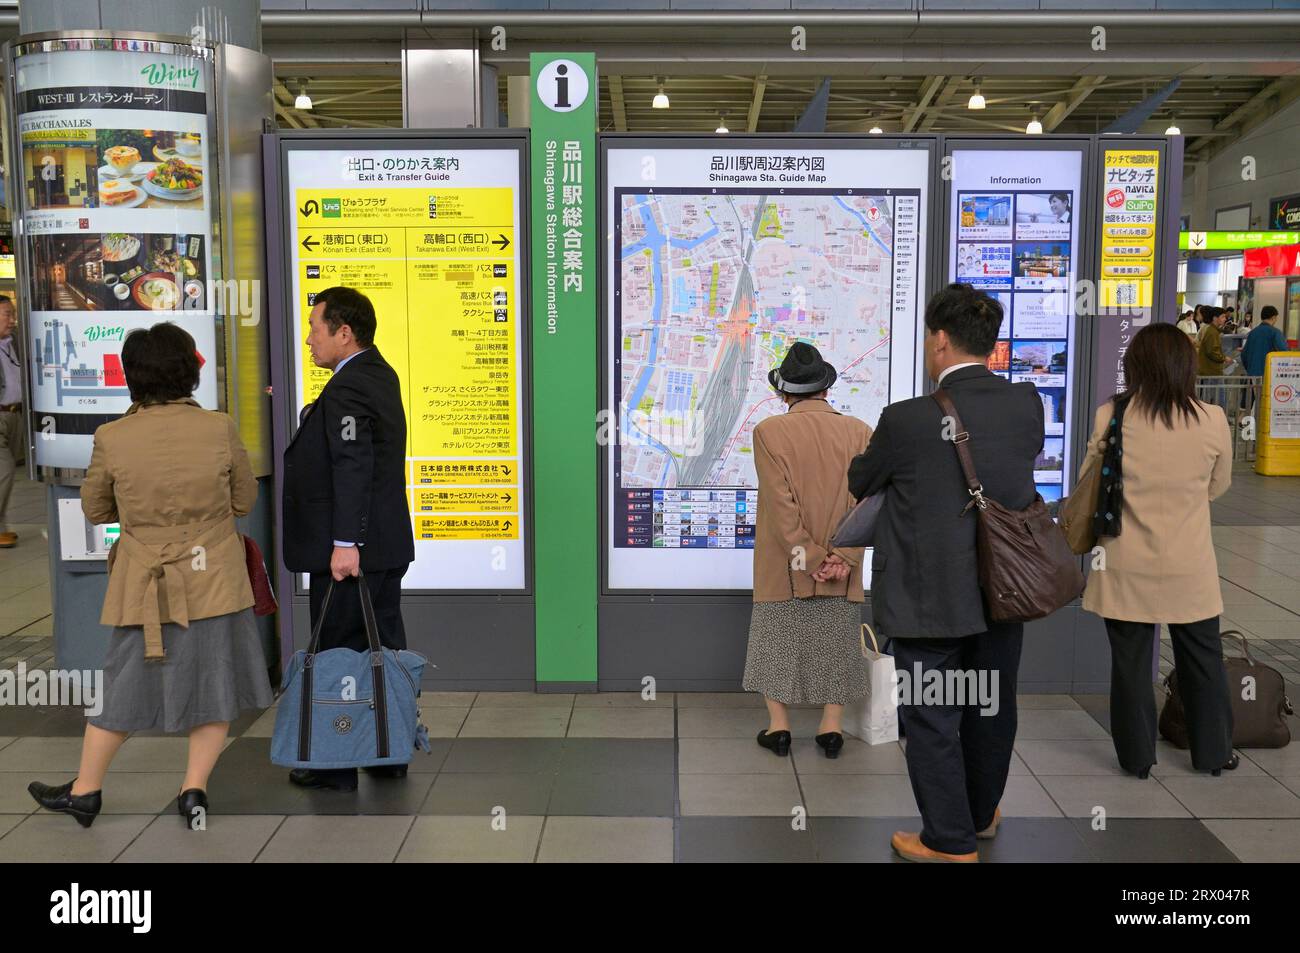 Information boards and maps at JR Shinagawa station, Tokyo JP Stock Photo